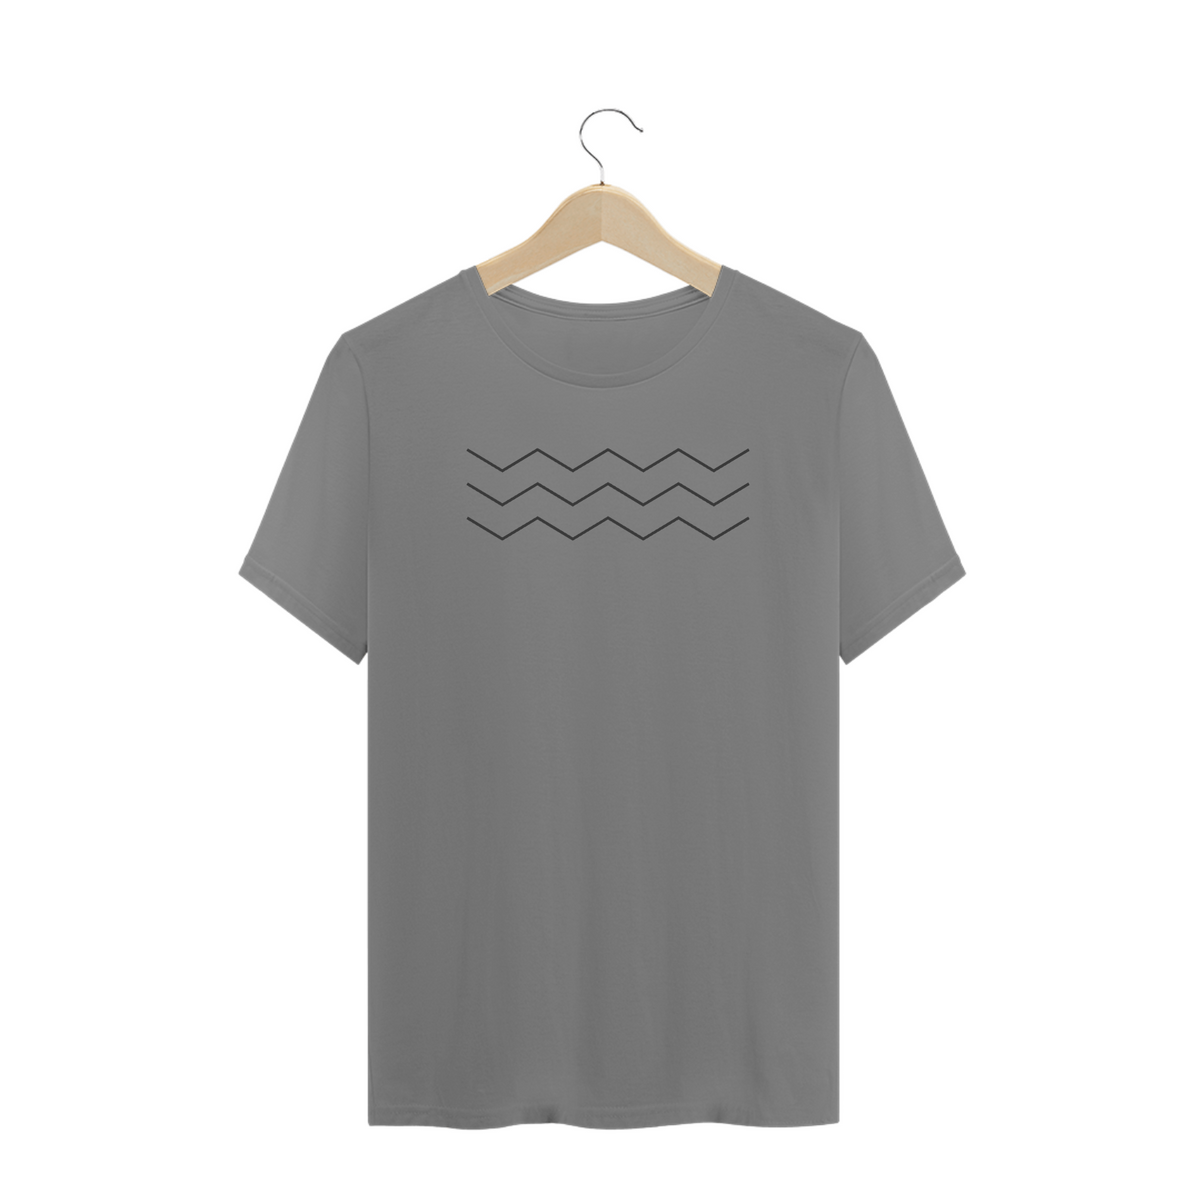 Nome do produto: T Shirt - Plus Size Waves